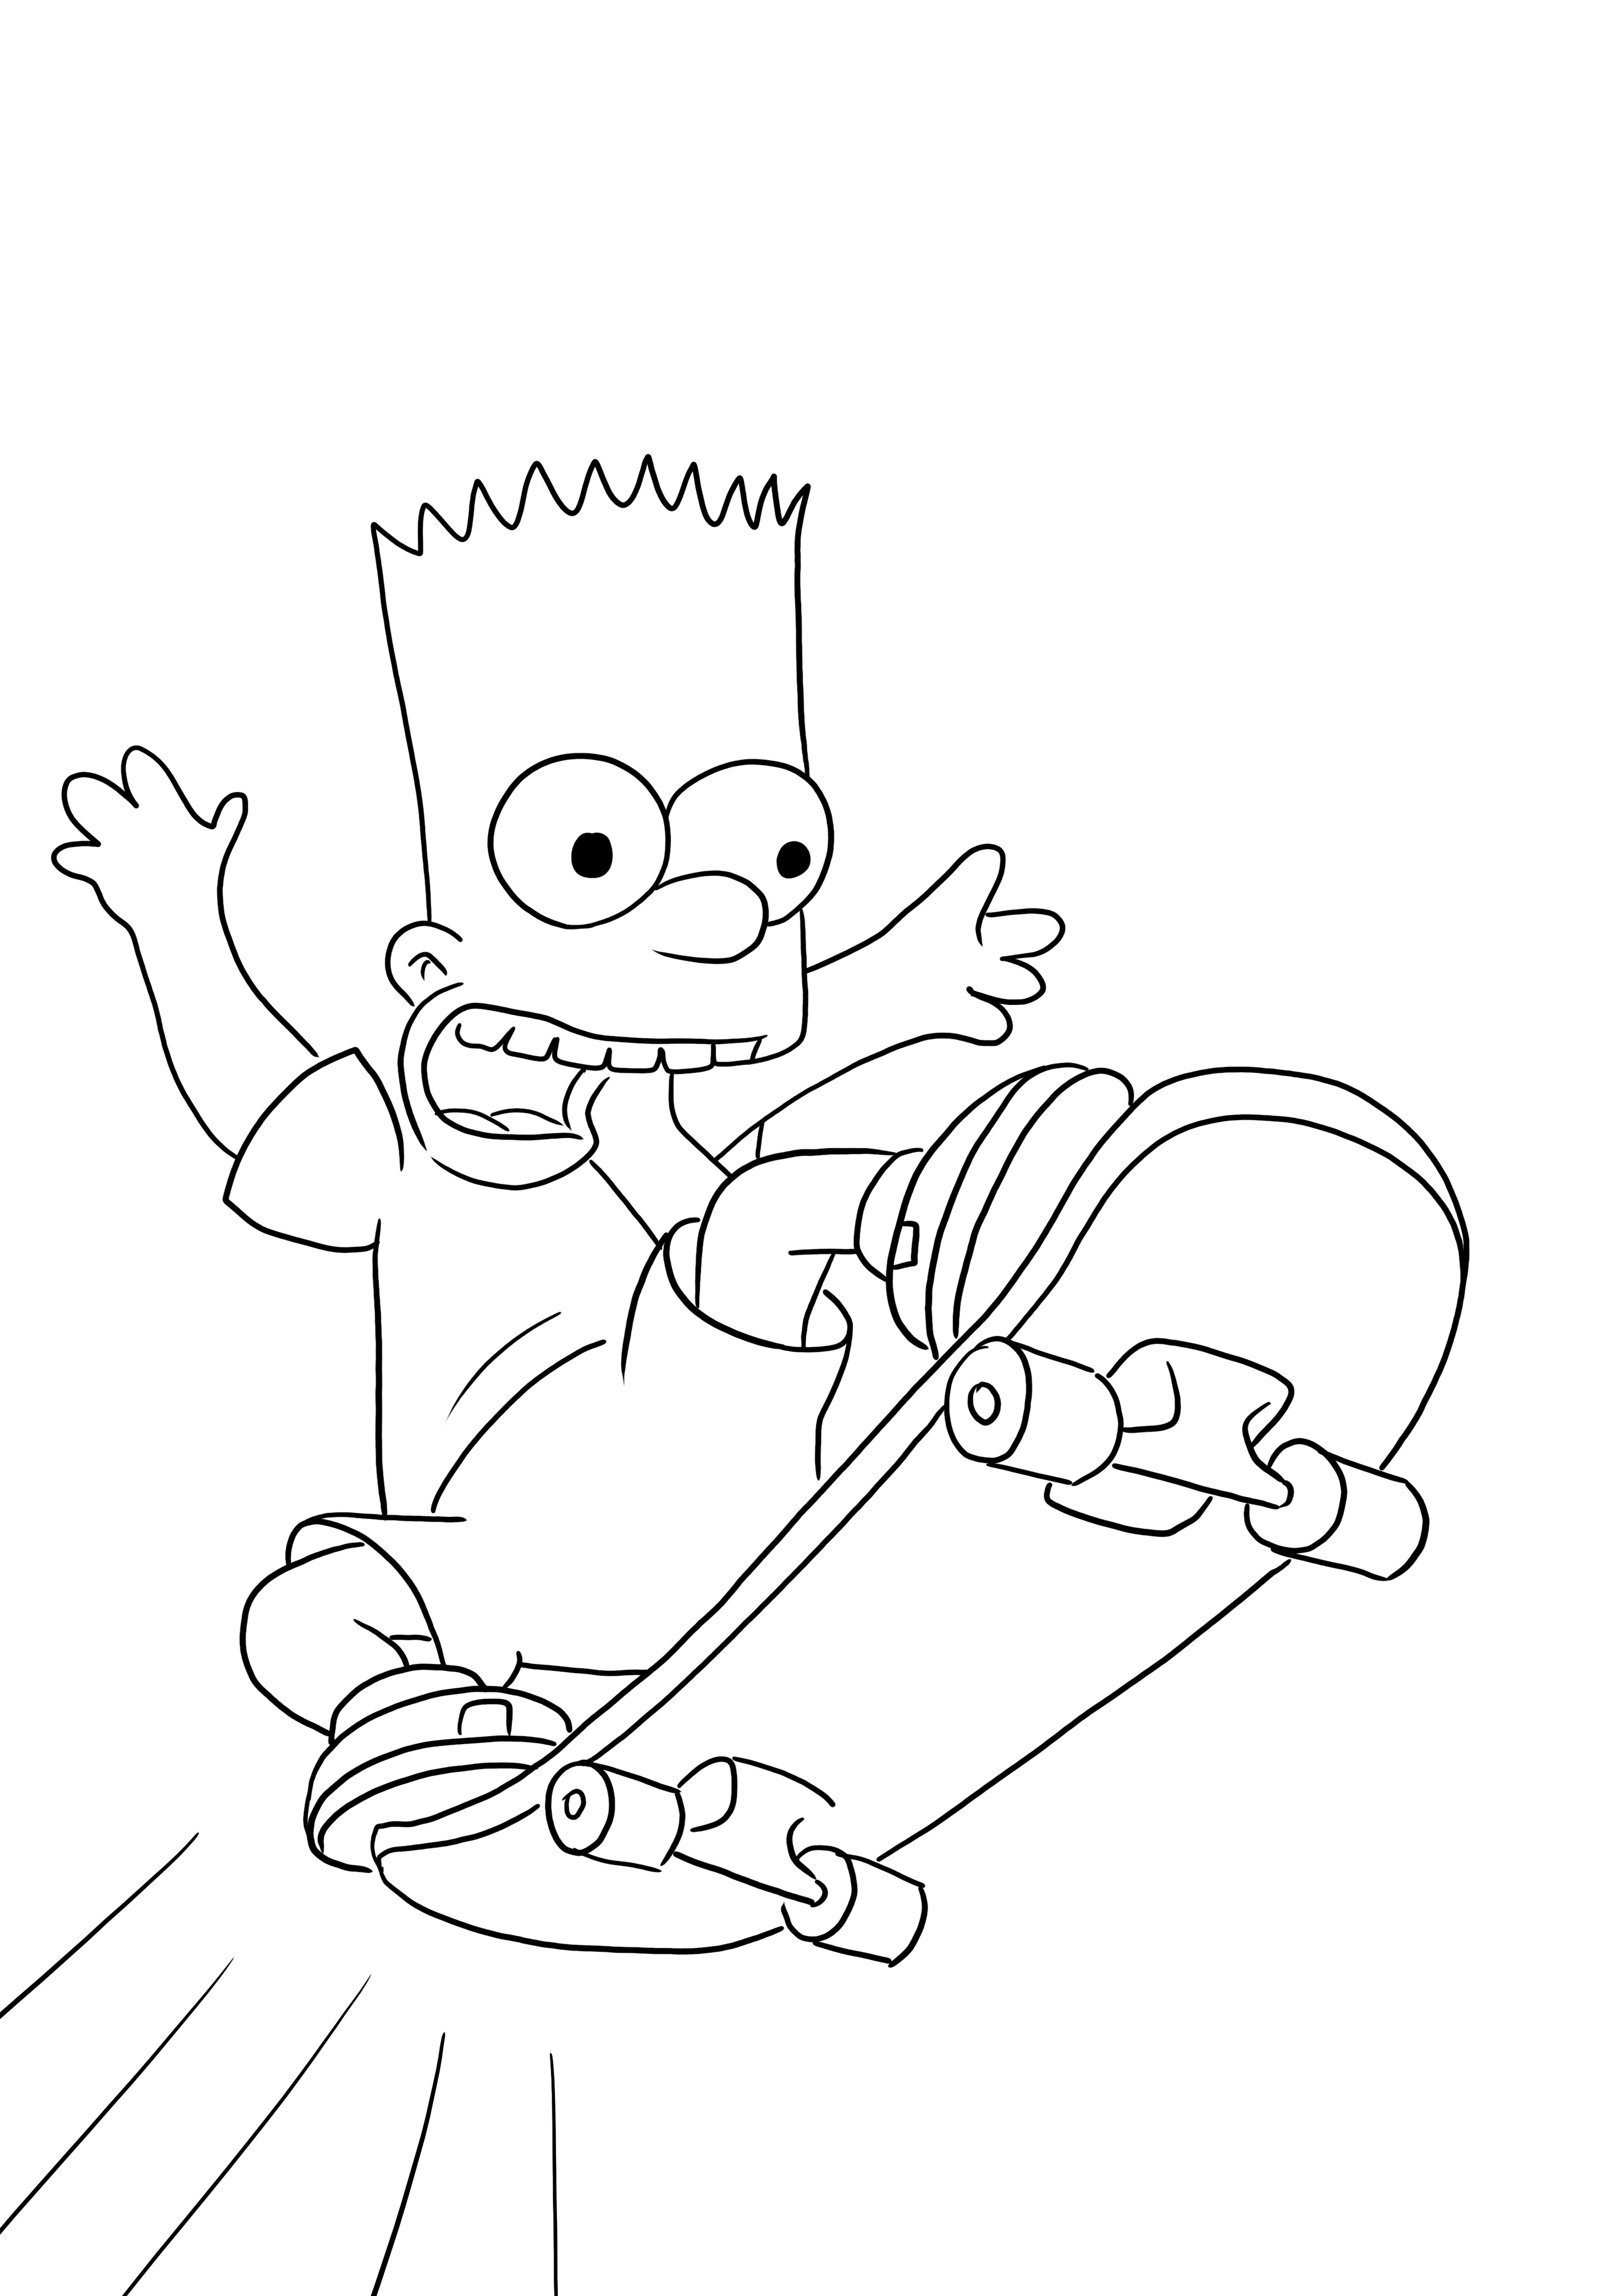 Bart Simpsons, çocuklar için baskı ve renklendirme için ücretsiz olarak kayıyor